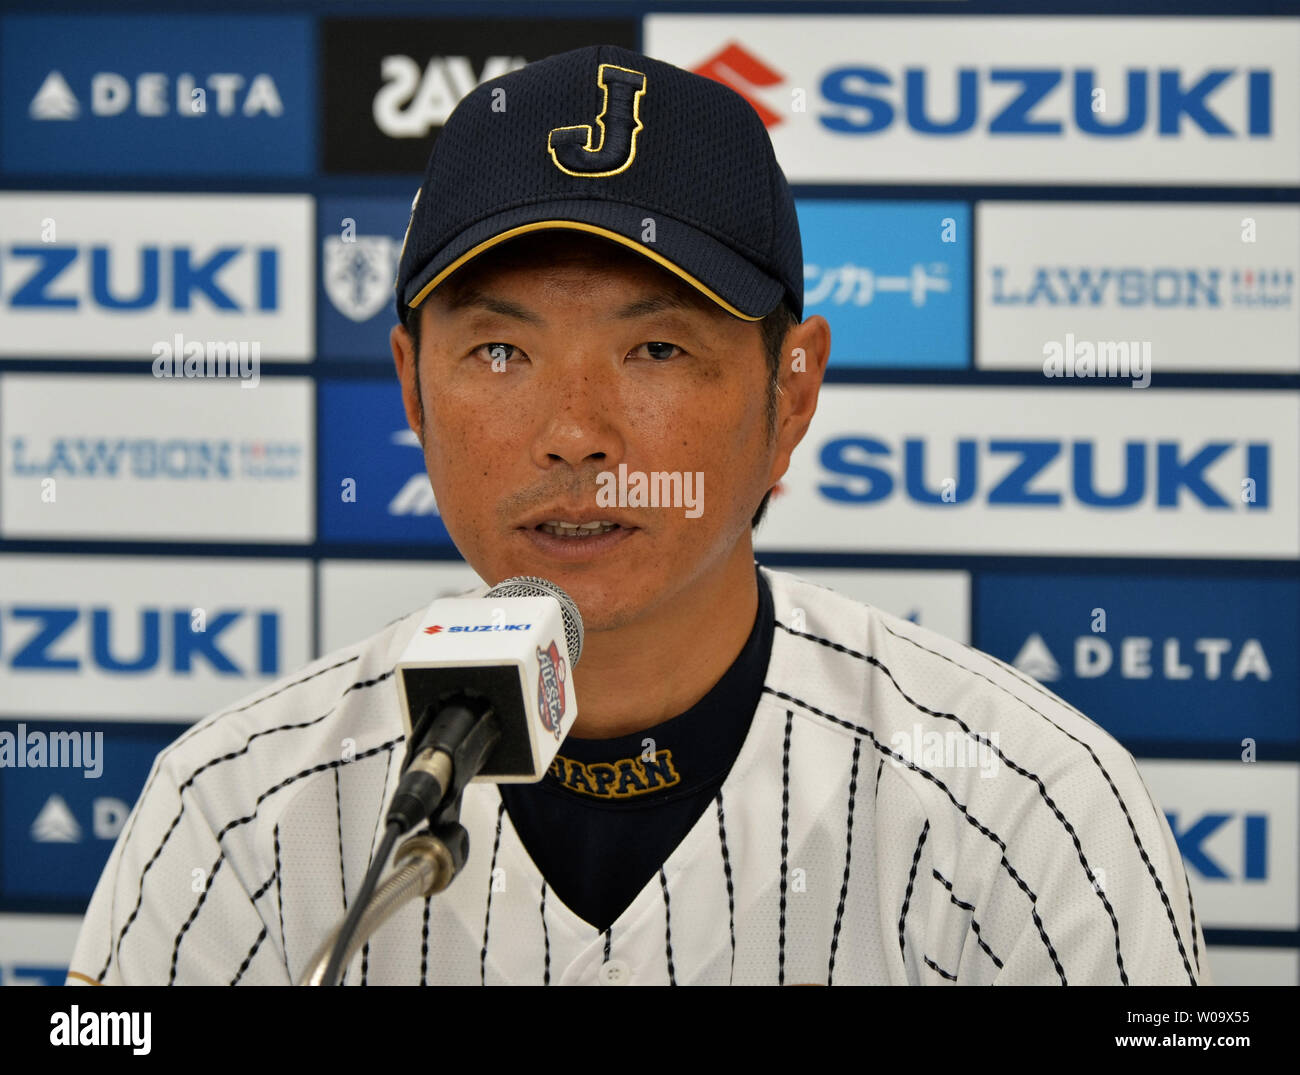 L'équipe nationale de baseball du Japon manager Hiroki Kokubo parle au cours de conférence de presse après le match contre toutes les étoiles de la MLB au Kyocera Dome Osaka à Osaka, Japon, le 12 novembre 2014. UPI/Keizo Mori Banque D'Images